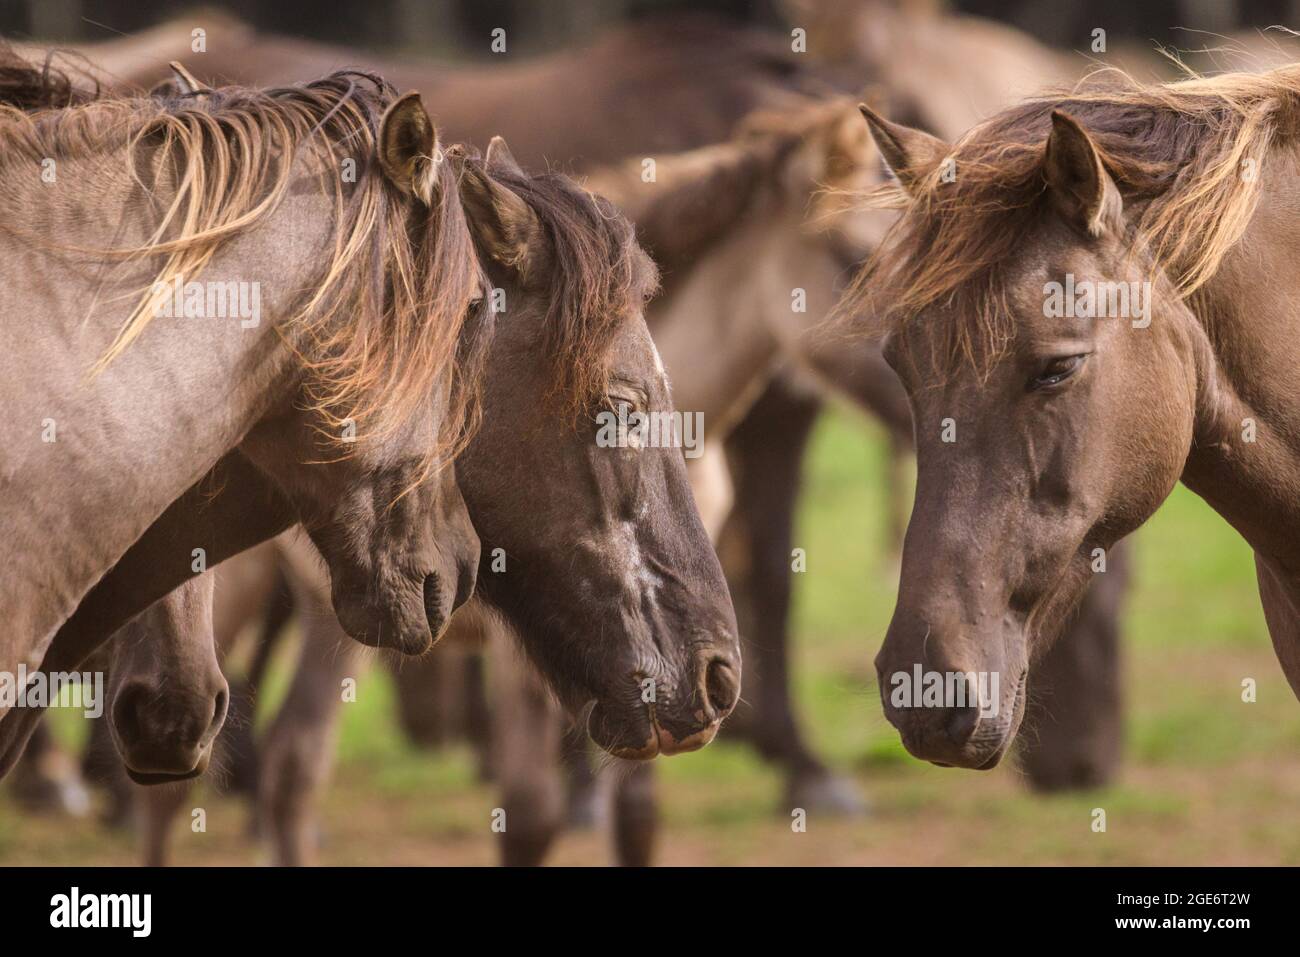 Gros plan, les poneys sauvages de Dülmen (également appelés les Dülmener ou les Duelmen), rare race semi-sauvage dans le Muensterland, Allemagne Banque D'Images